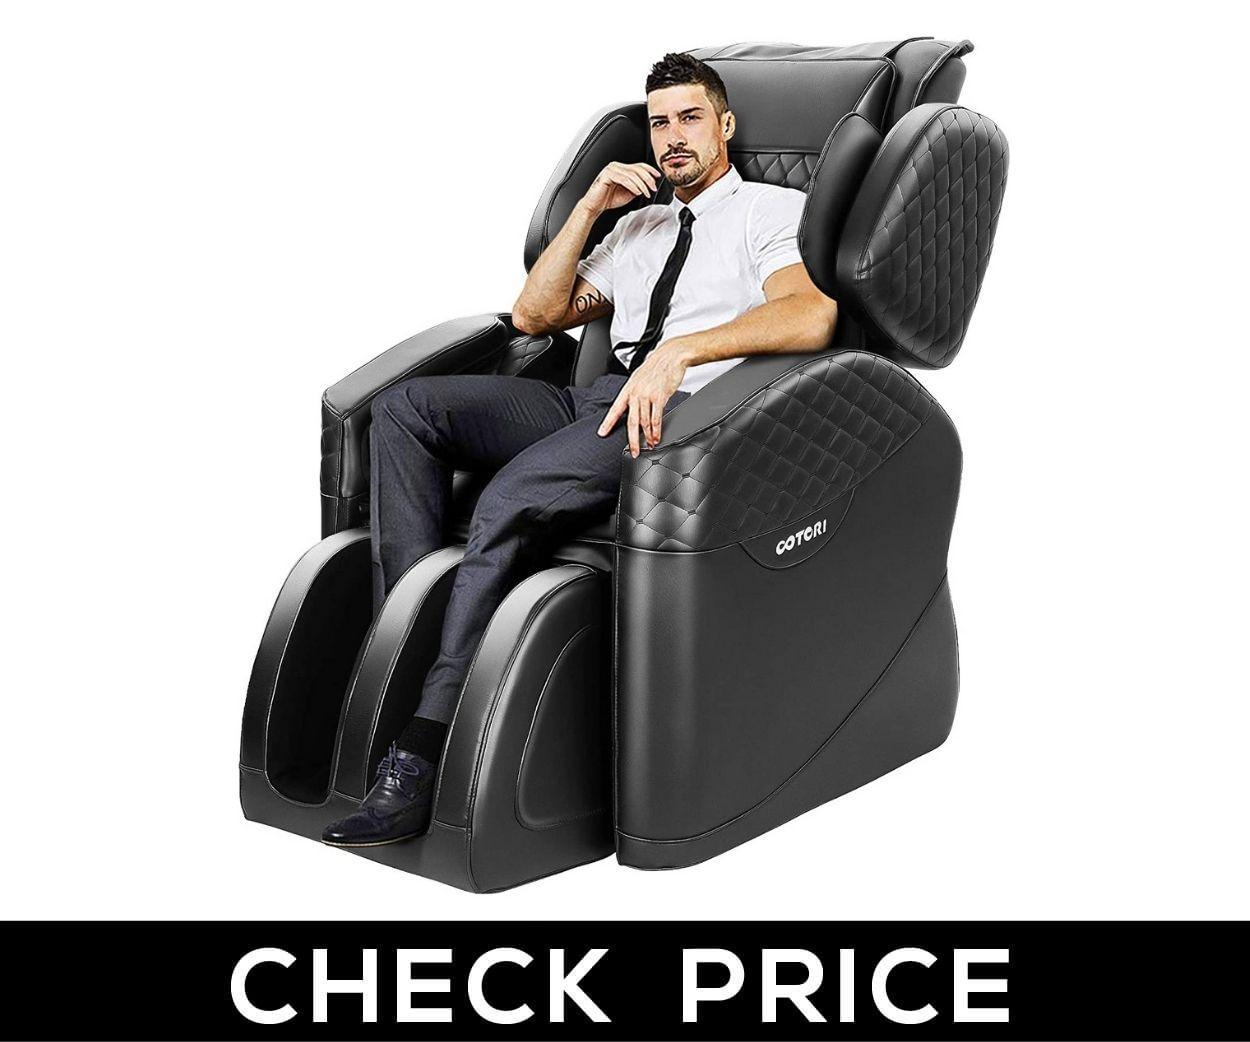 .TinyCooper - Best Zero Gravity Massage Chair under $1000